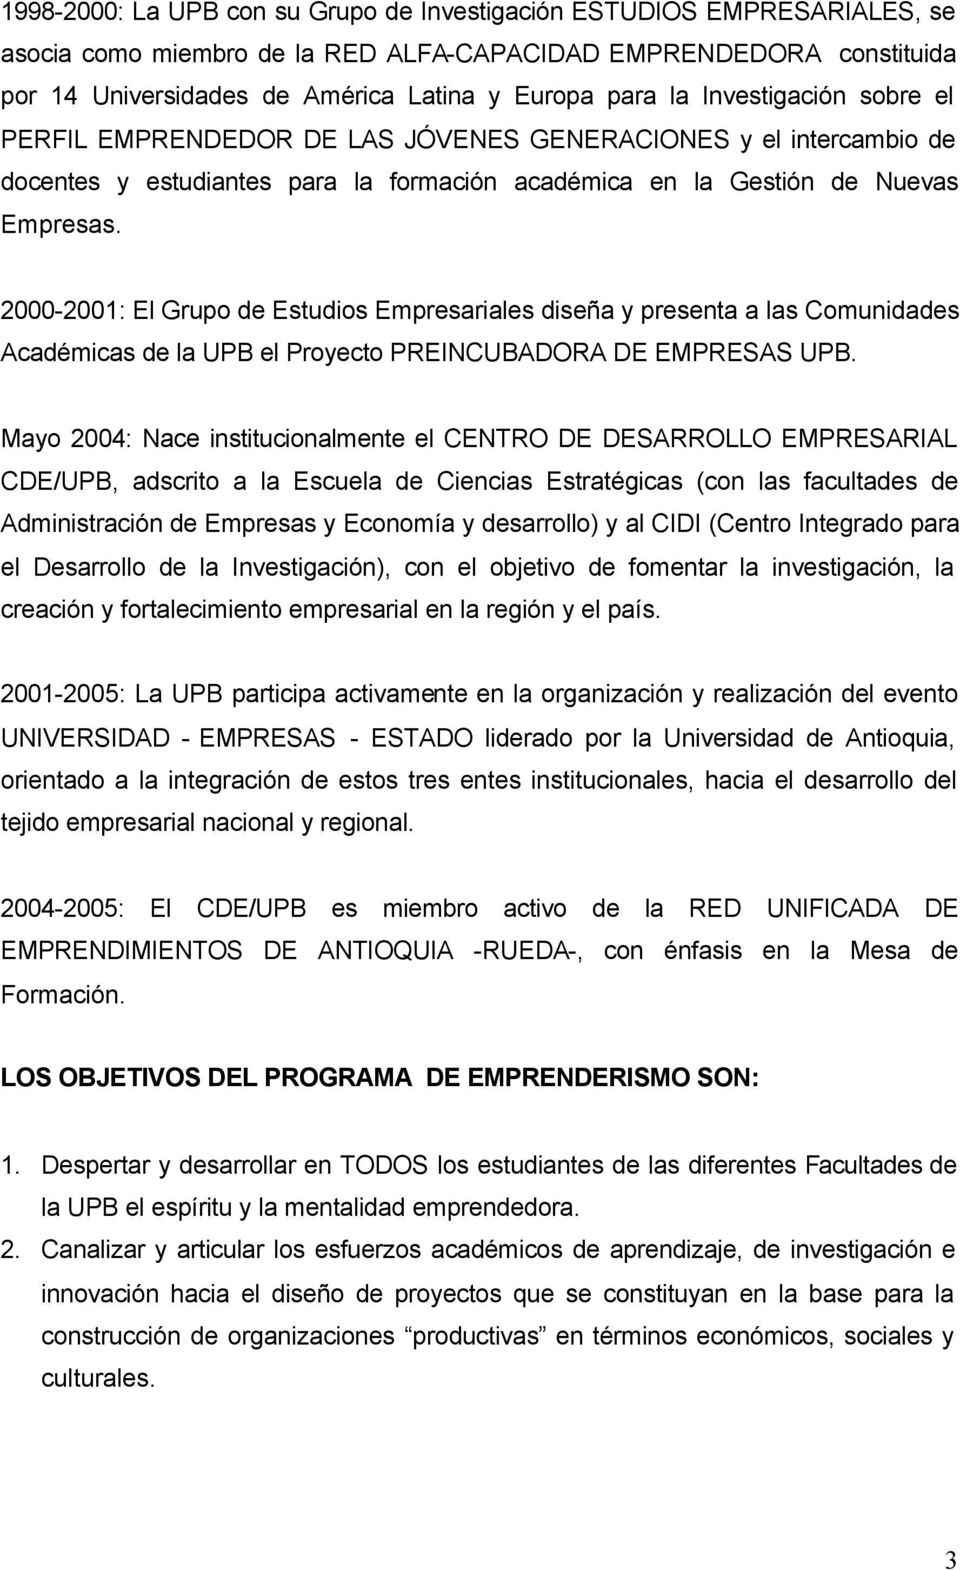 2000-2001: El Grupo de Estudios Empresariales diseña y presenta a las Comunidades Académicas de la UPB el Proyecto PREINCUBADORA DE EMPRESAS UPB.